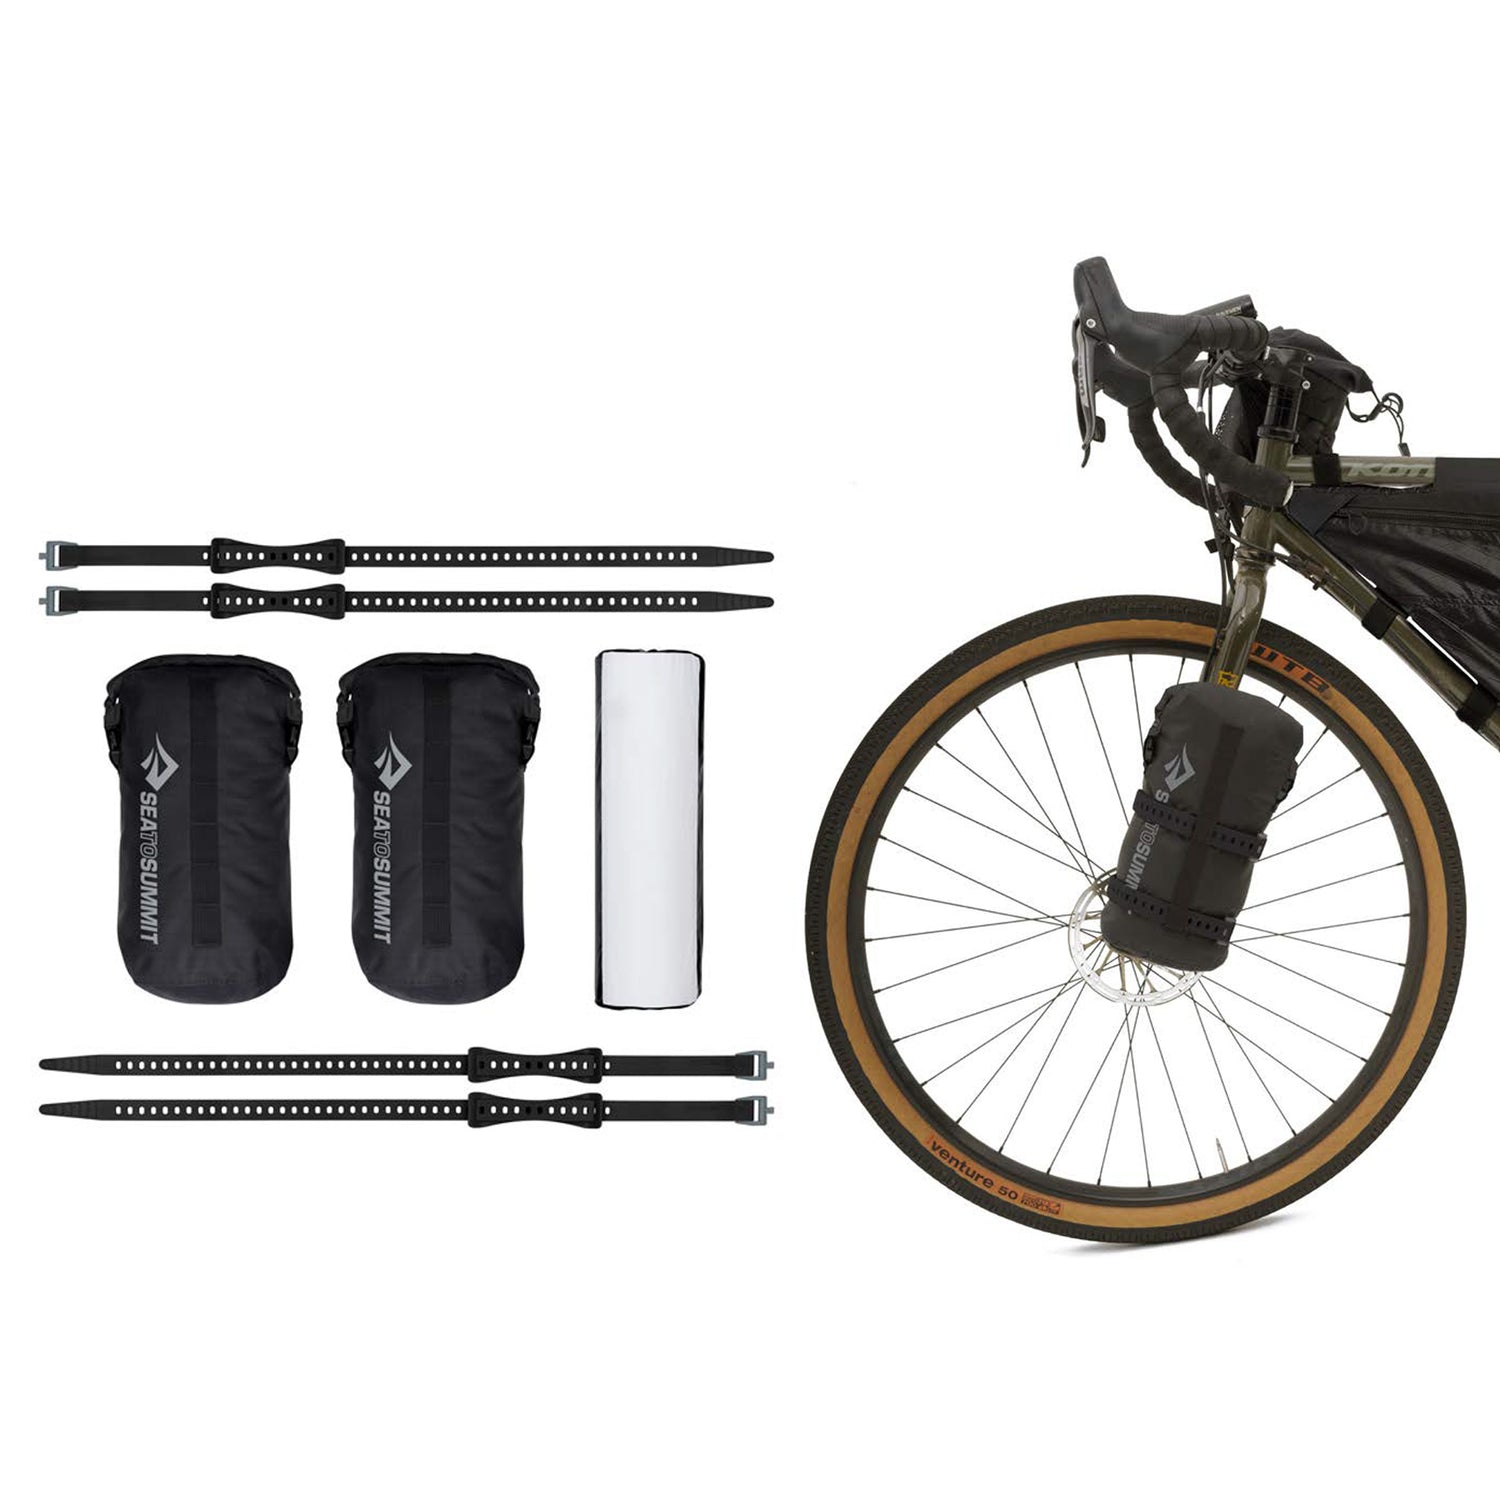 Alto TR2 Bikepack – Tente deux personnes ultralégère pour le bikepacking